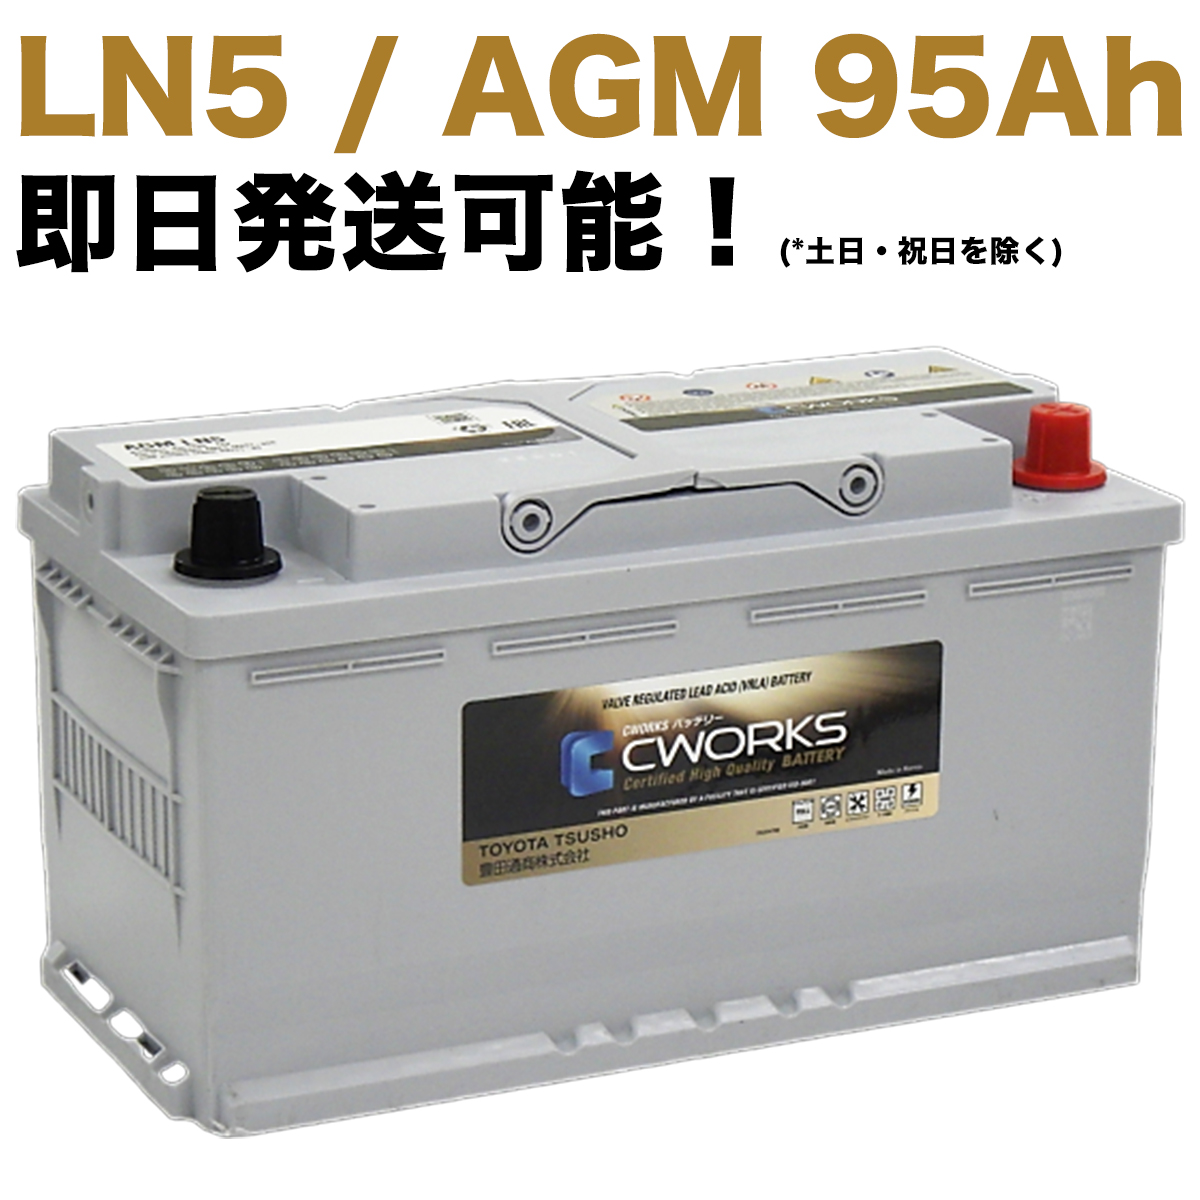 【保証付】新品 バッテリー L5 AGM 95Ah メルセデス ベンツ W463 G320 GF-G320L Gクラス ゲレンデ A001982820828 (92Ah/90Ah) LN5 CWORKS 595901086｜e-benzparts